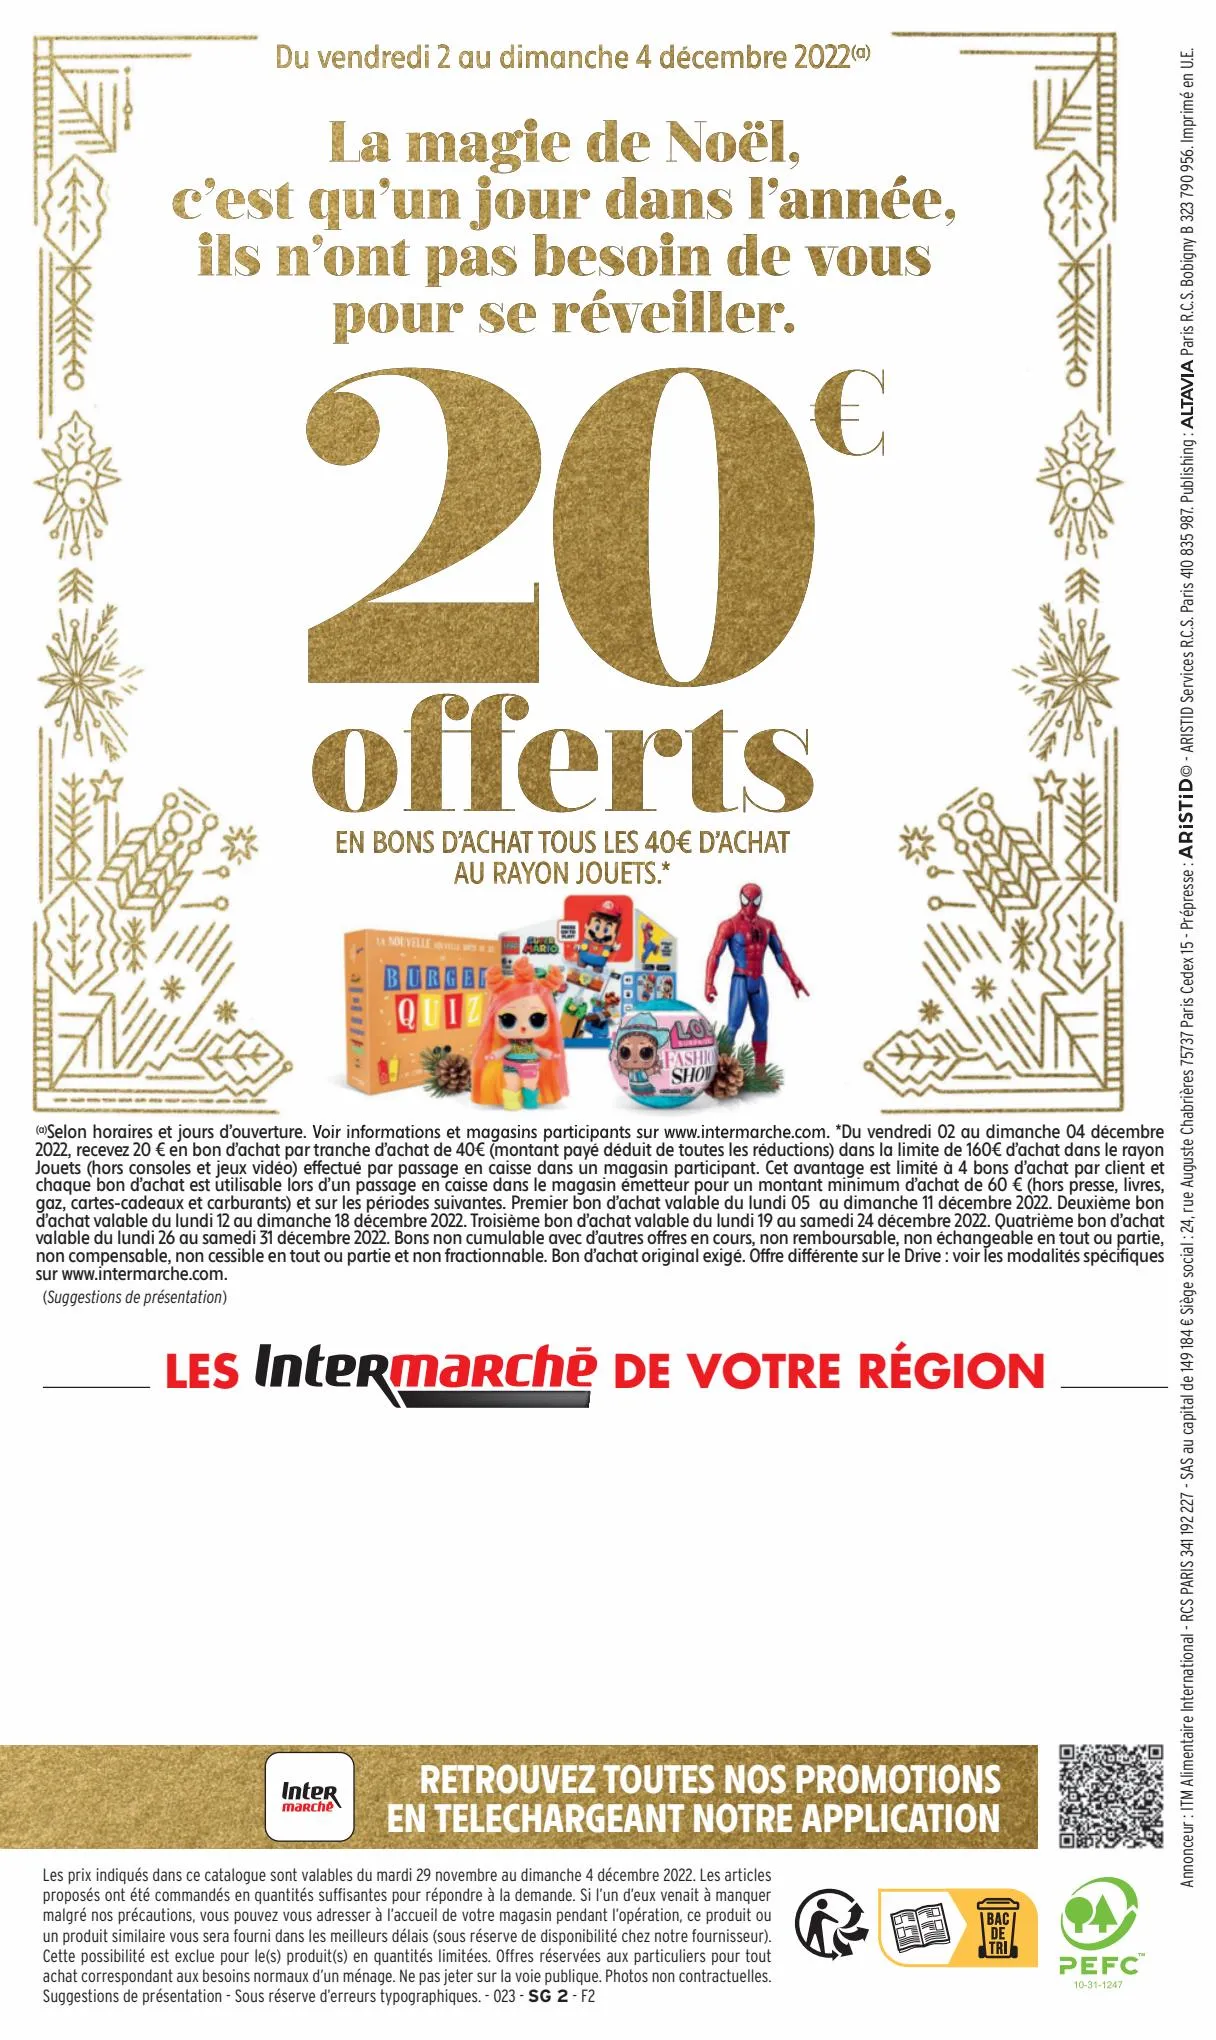 Catalogue 130€ offerts en bons d'achat, page 00052